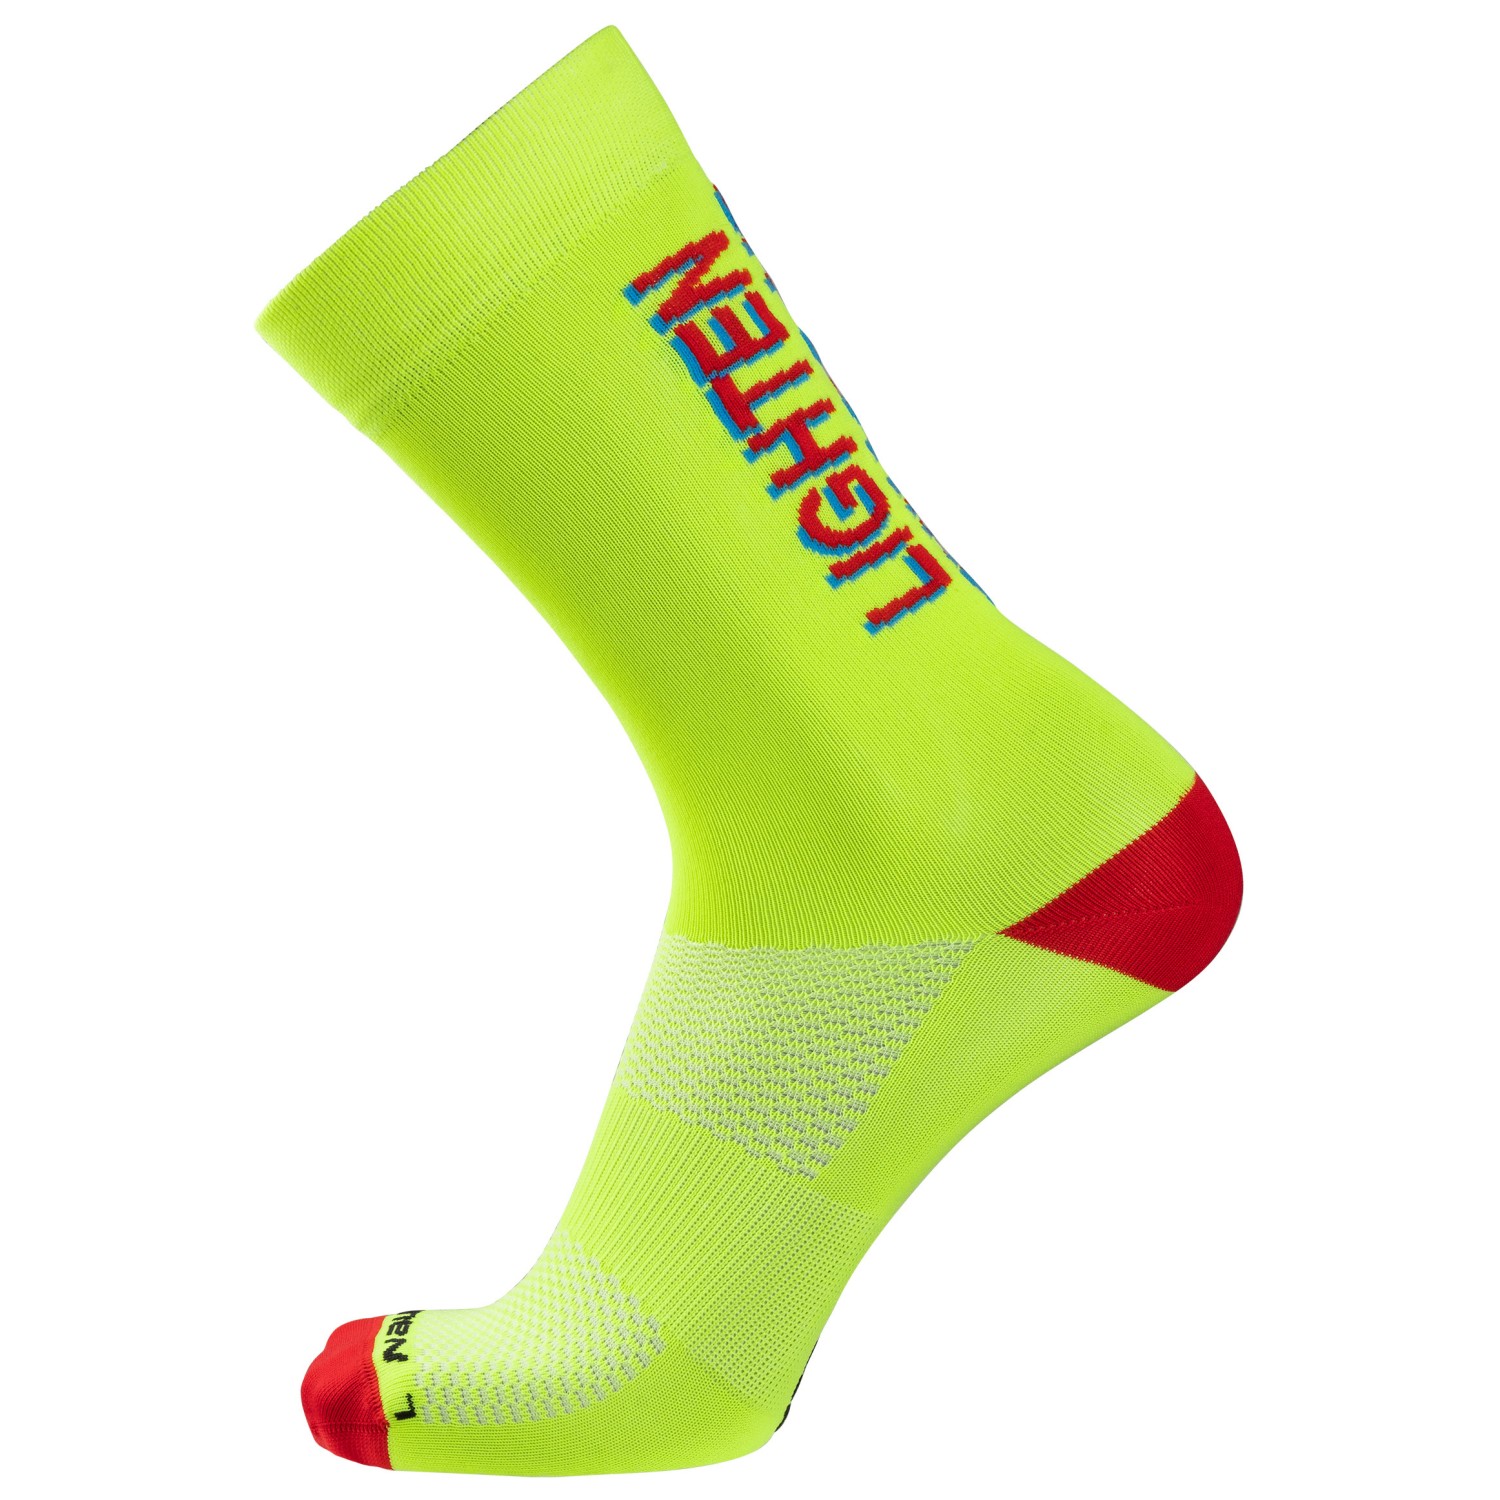 Велосипедные носки Nalini Comic Socks H 24, цвет Yellow/Lighten спортивные носки nalini new coolmax socks 2xl черные розовые